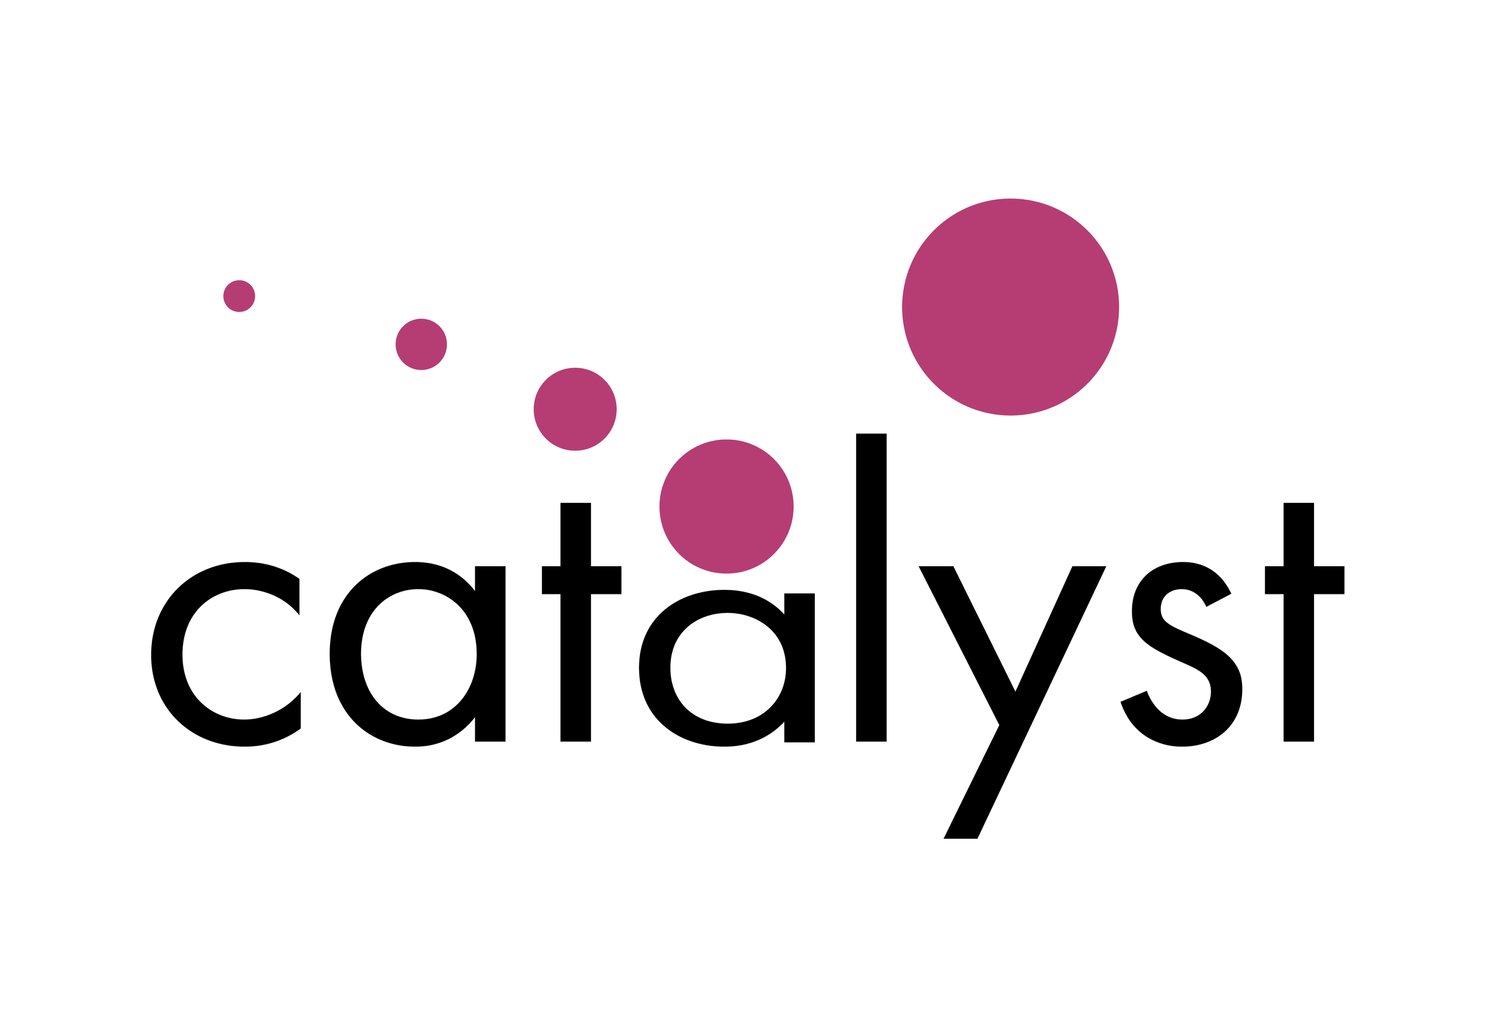 Catalyst Design PLLC